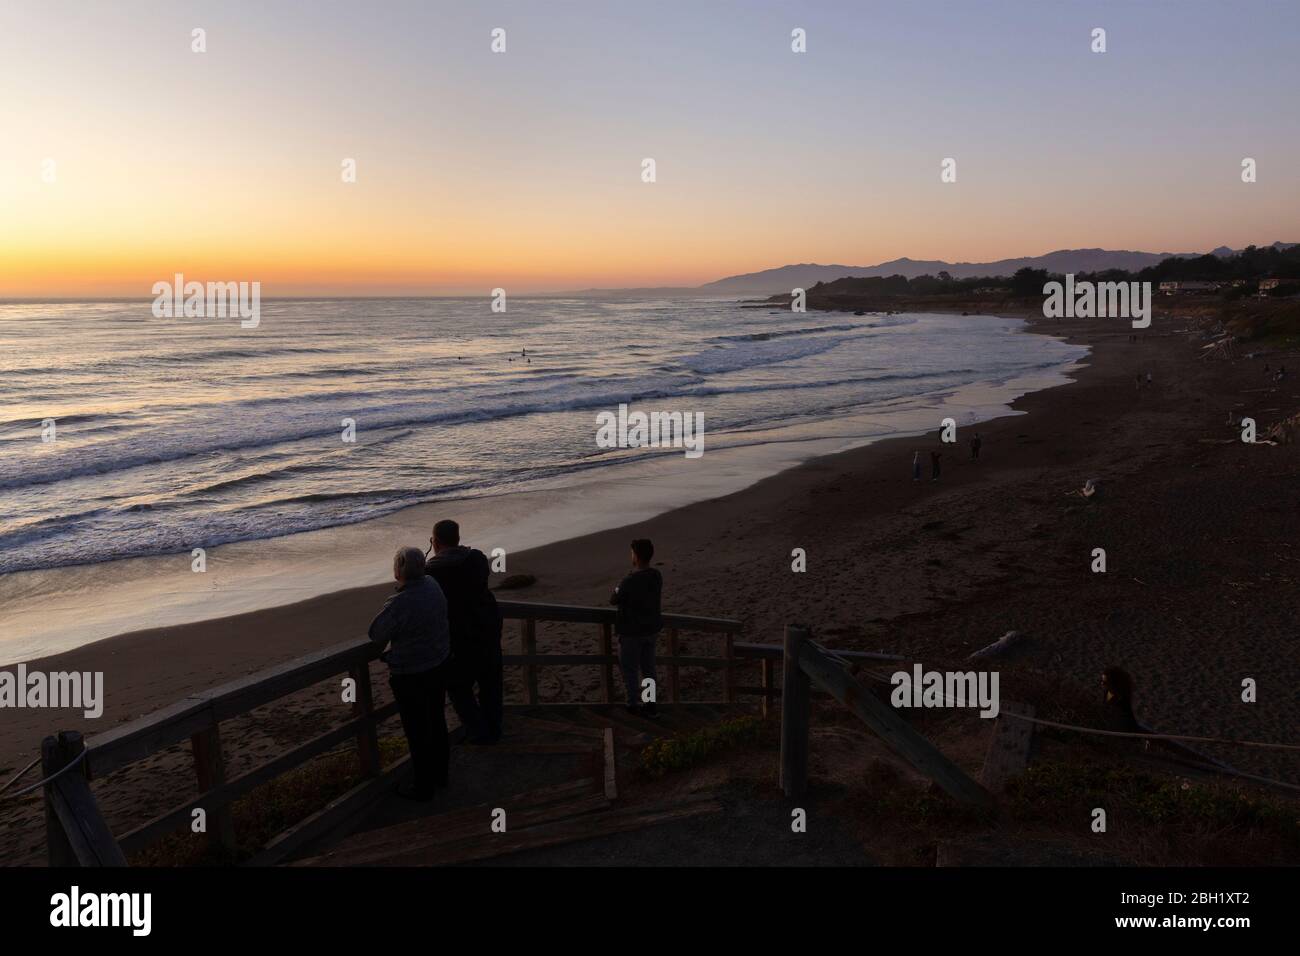 CAMBRIA, ESTADOS UNIDOS - 21 DE SEPTIEMBRE de 2019 : puesta de sol en la playa Moonstone en la costa californiana con gente mirando a los surfistas nocturnos. Foto de stock